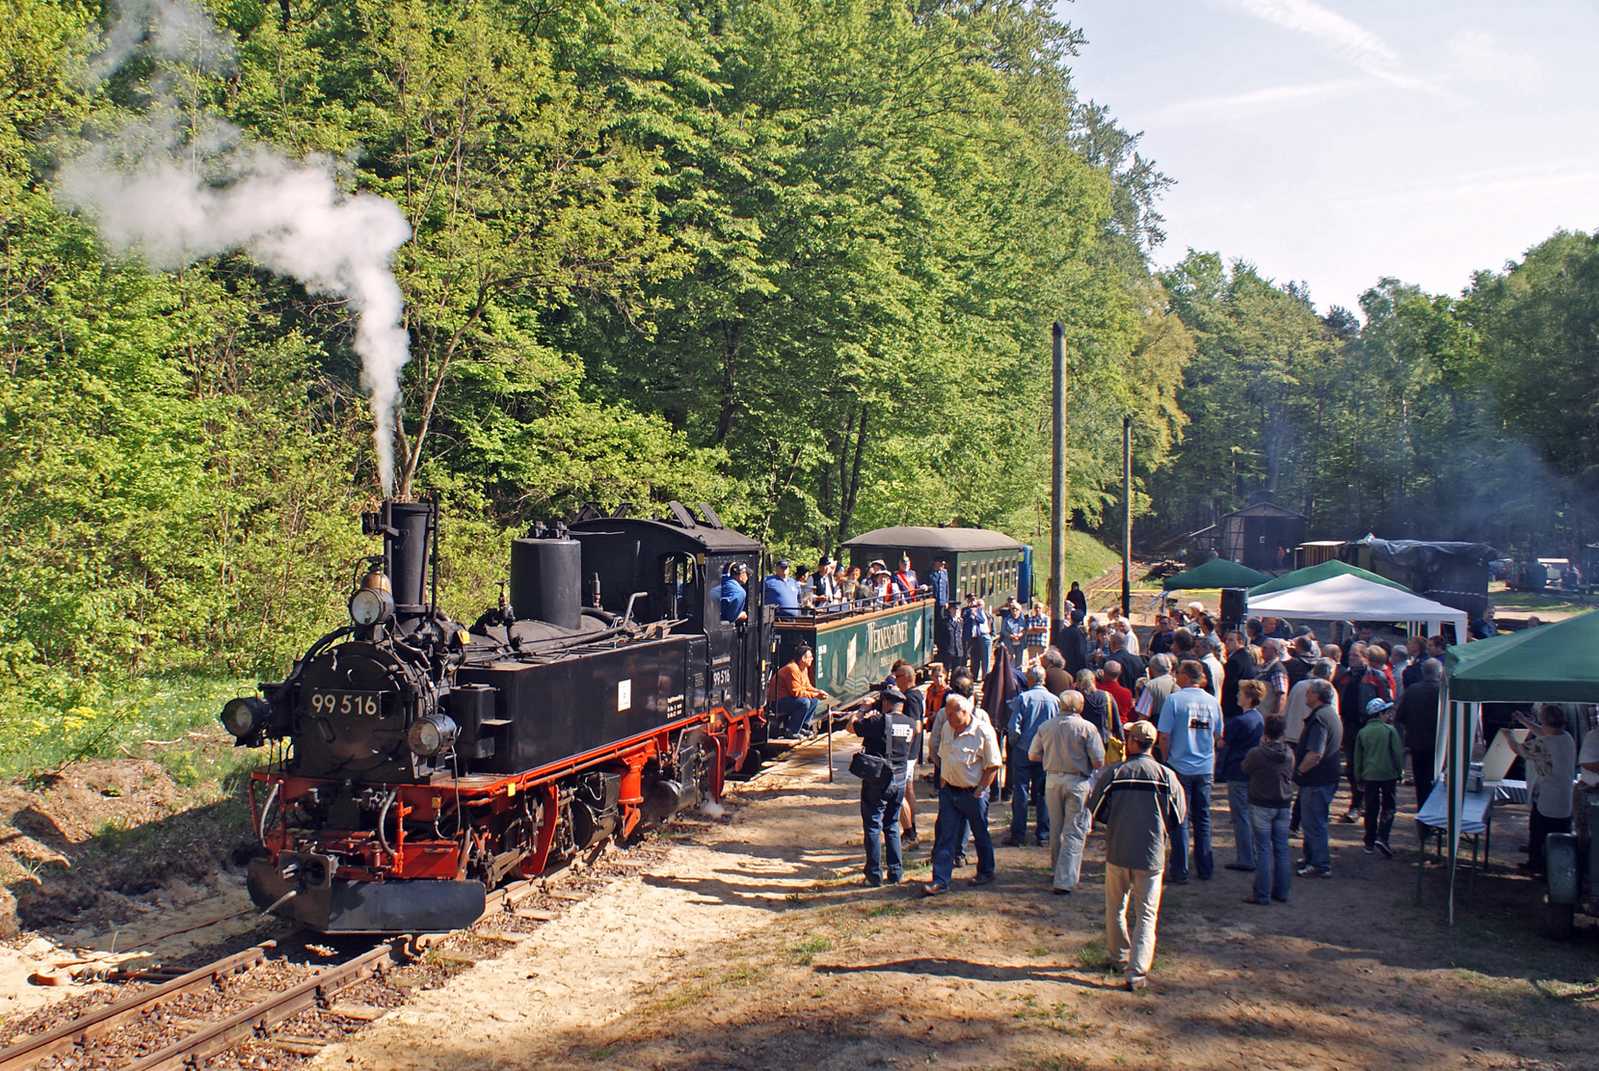 Am 7. Mai wurde mit IV K 99 516 aus Schönheide die „Museumsbahn Magdeburgerforth“ mit diesem Zwei-Wagen-Zug und vielen Gästen eröffnet.